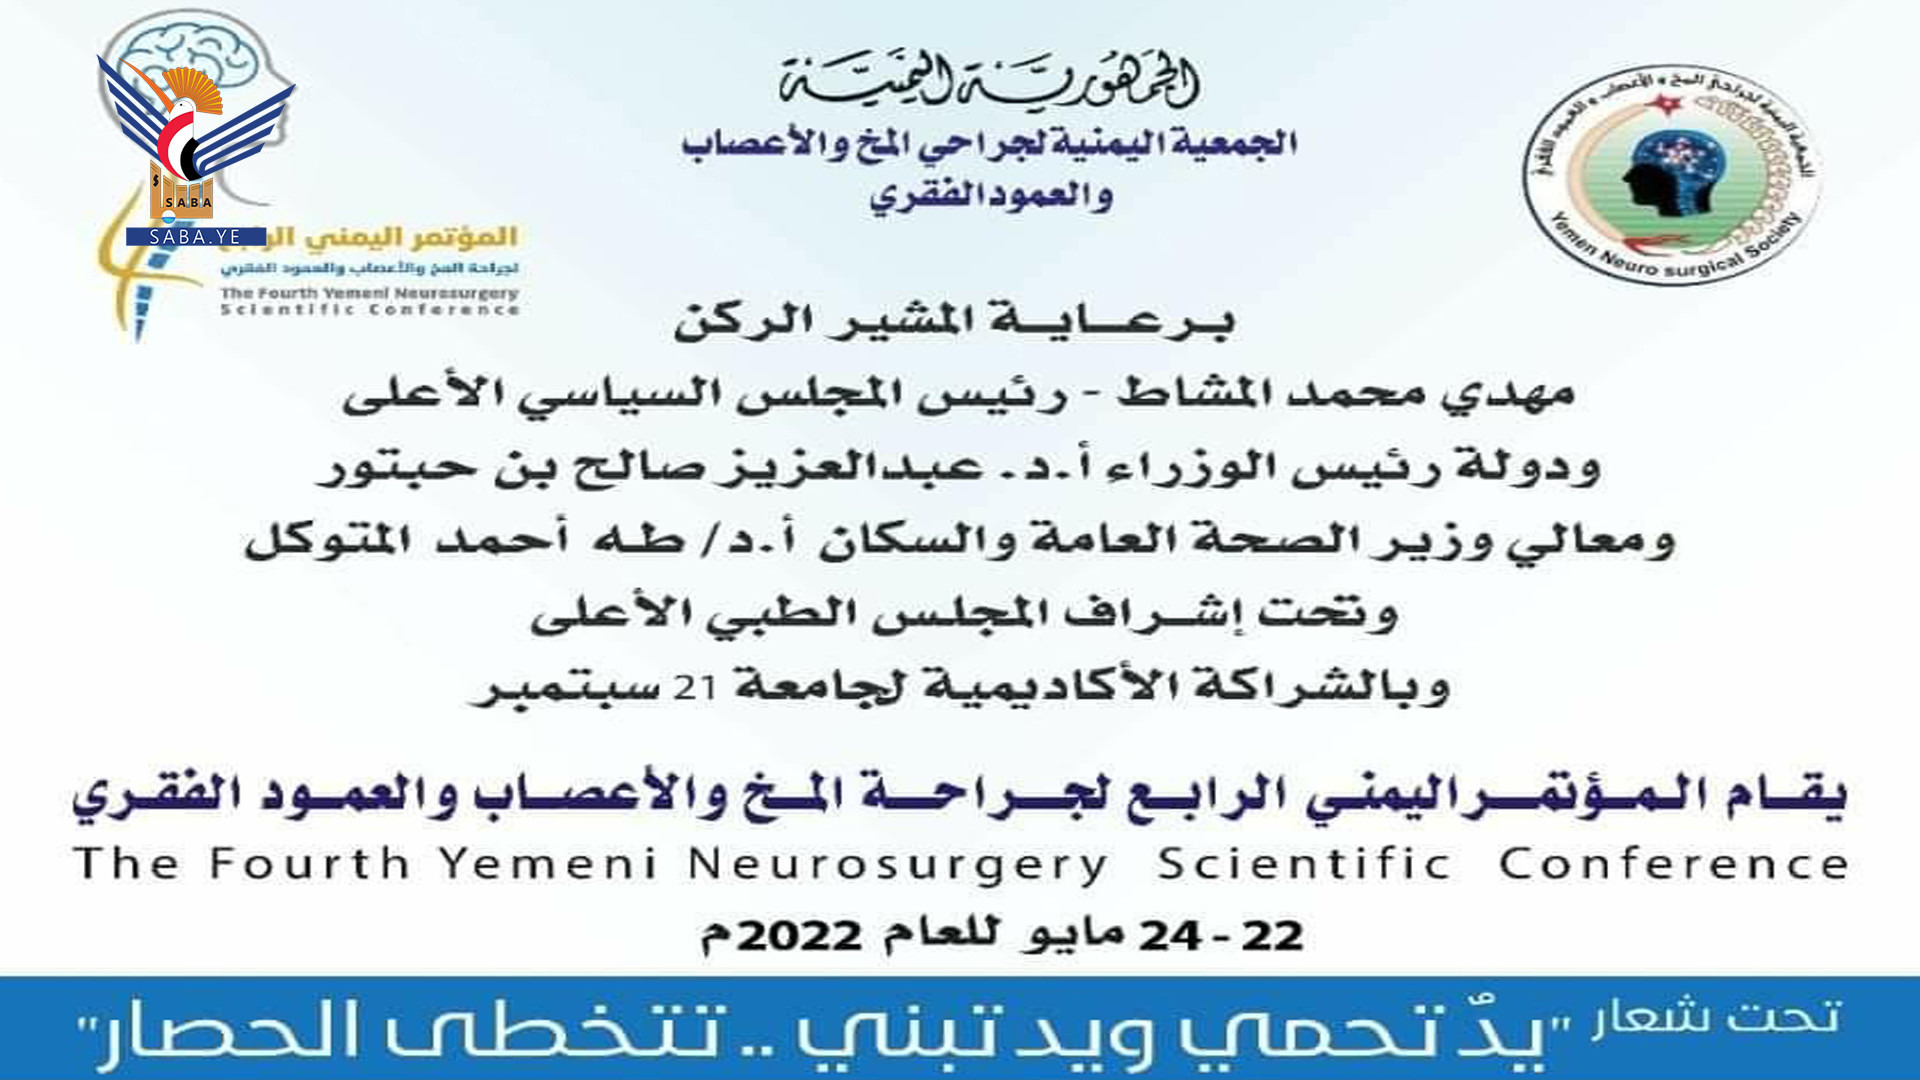 غدا الأحد انطلاق المؤتمر اليمني الرابع لجراحة المخ والأعصاب